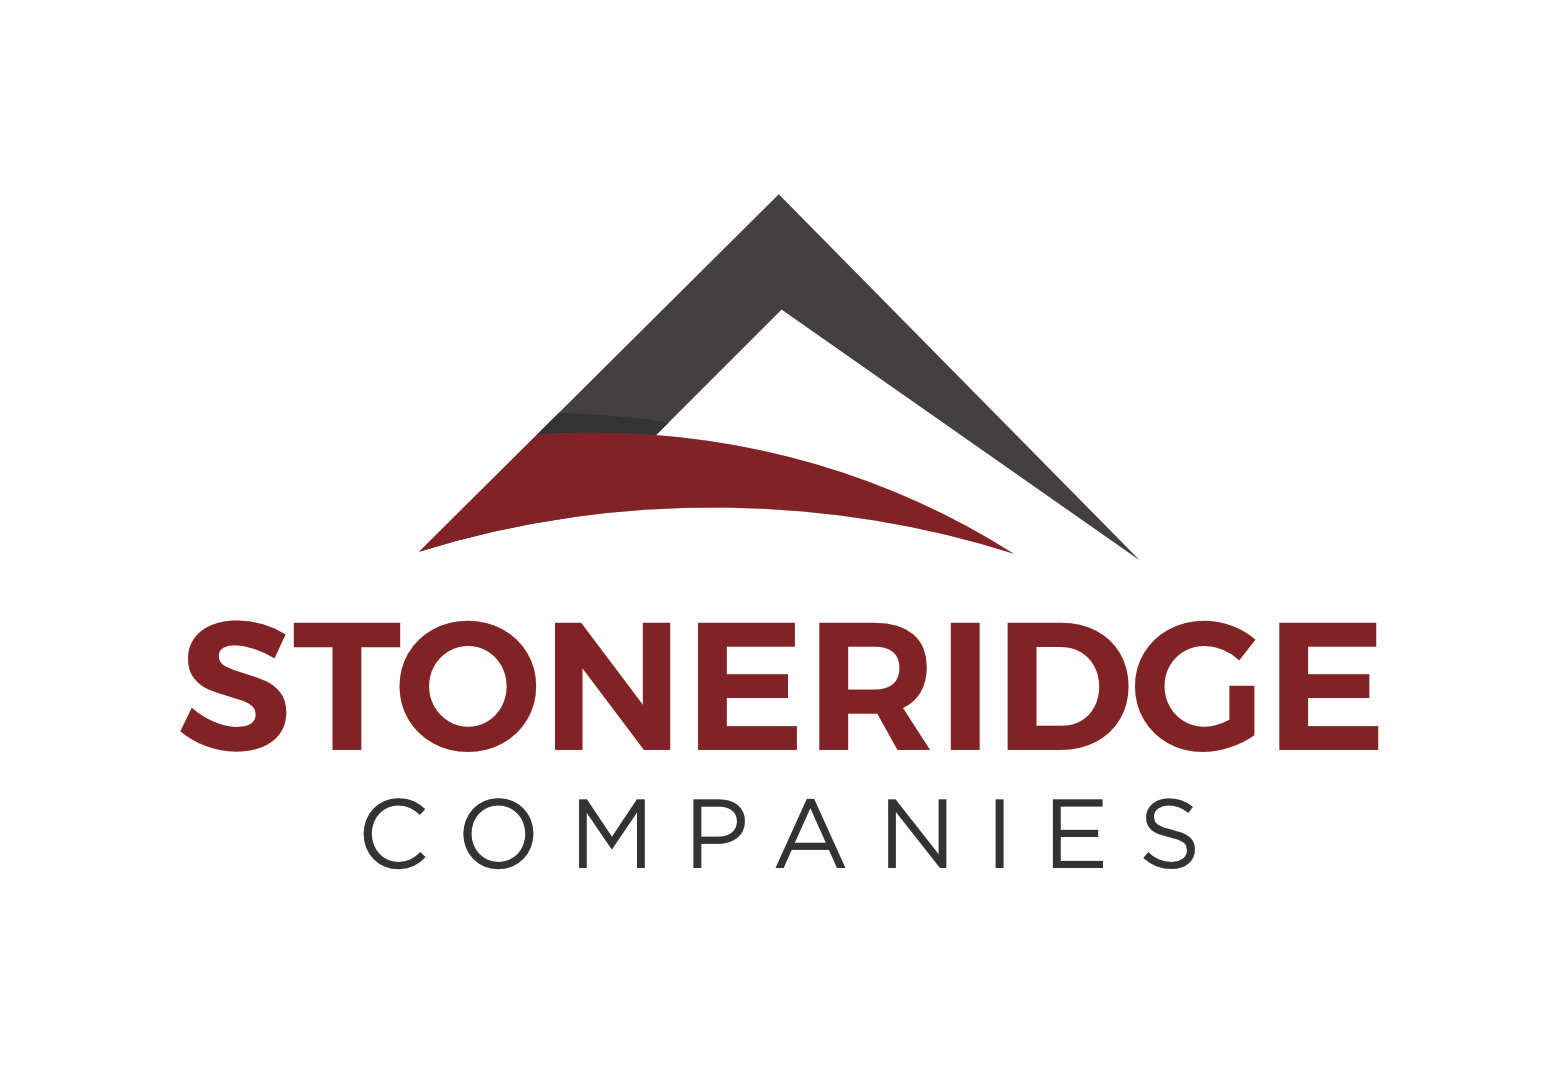 Stoneridge Companies